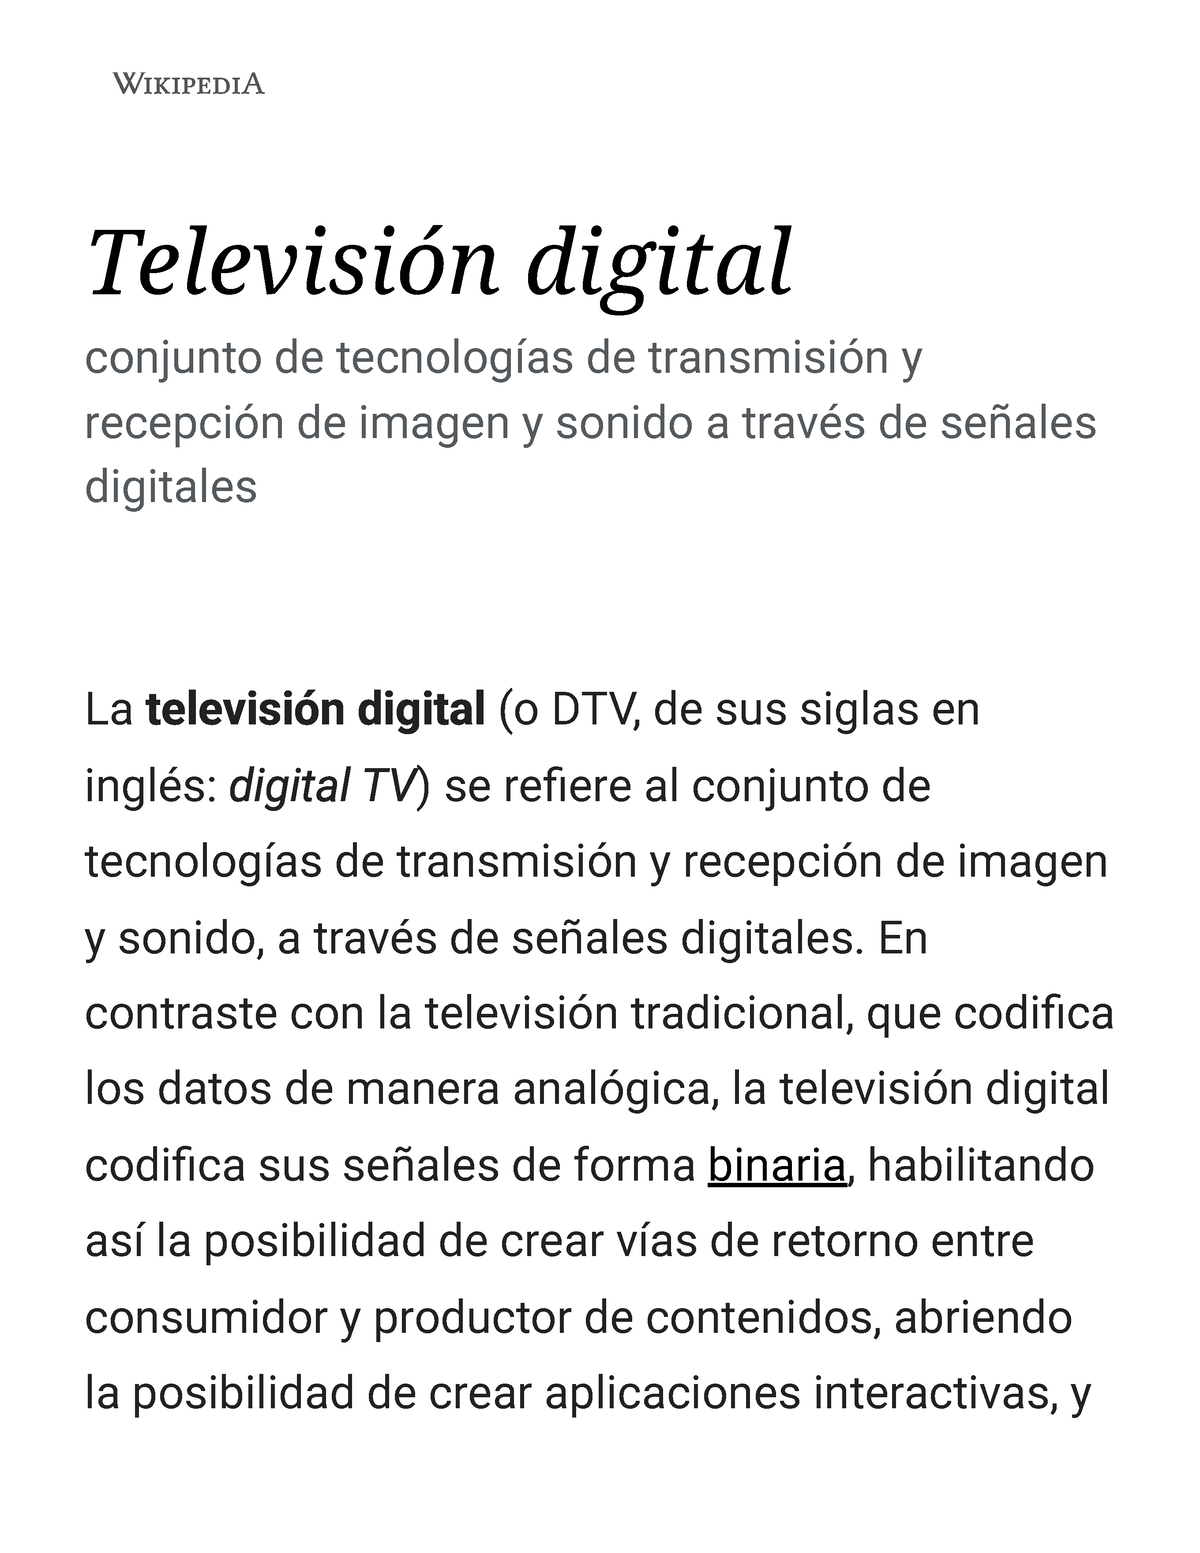 Televisión digital terrestre en Colombia - Wikipedia, la enciclopedia libre